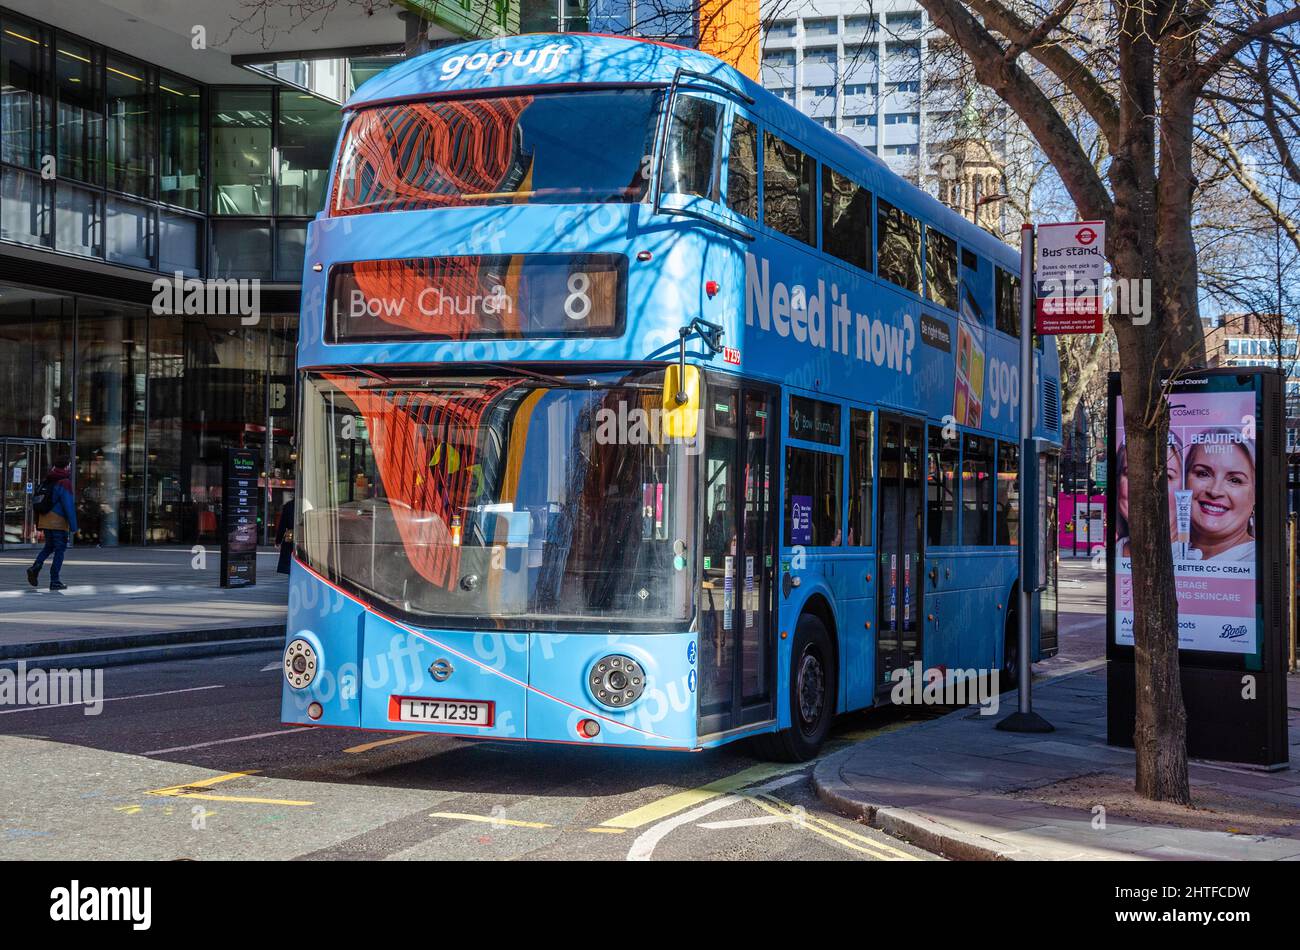 Ein Blau, nein 8, Doppeldeckerbus an einer Bushaltestelle in der St Giles High Street in London, Großbritannien, Richtung Bow Church Stockfoto